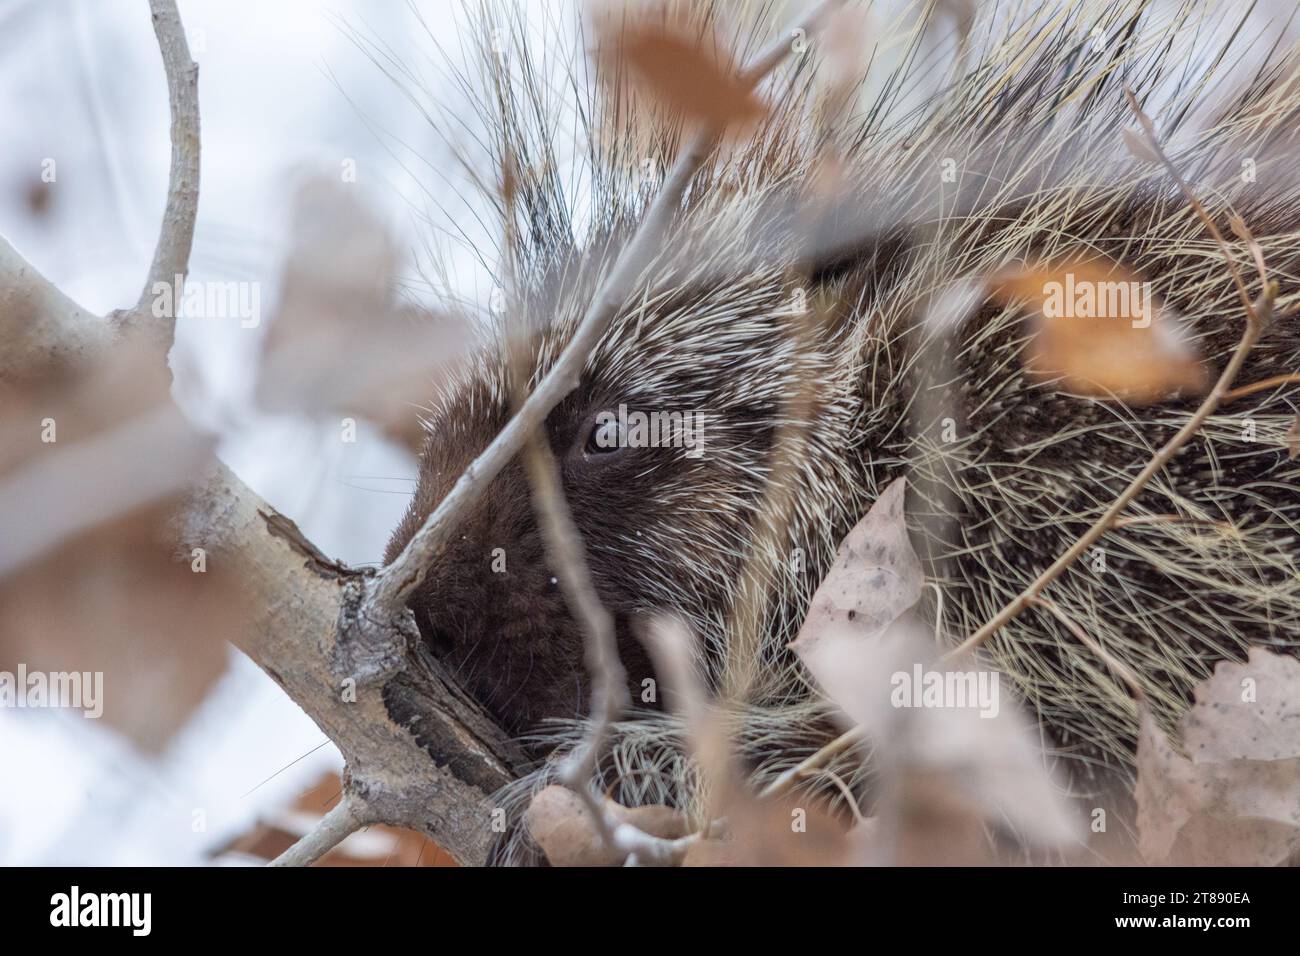 Nahporträt eines Stachelschweins mit wachsamen Augen, das im Winter auf einem Ast hoch oben auf einem Baum ruht. Stockfoto